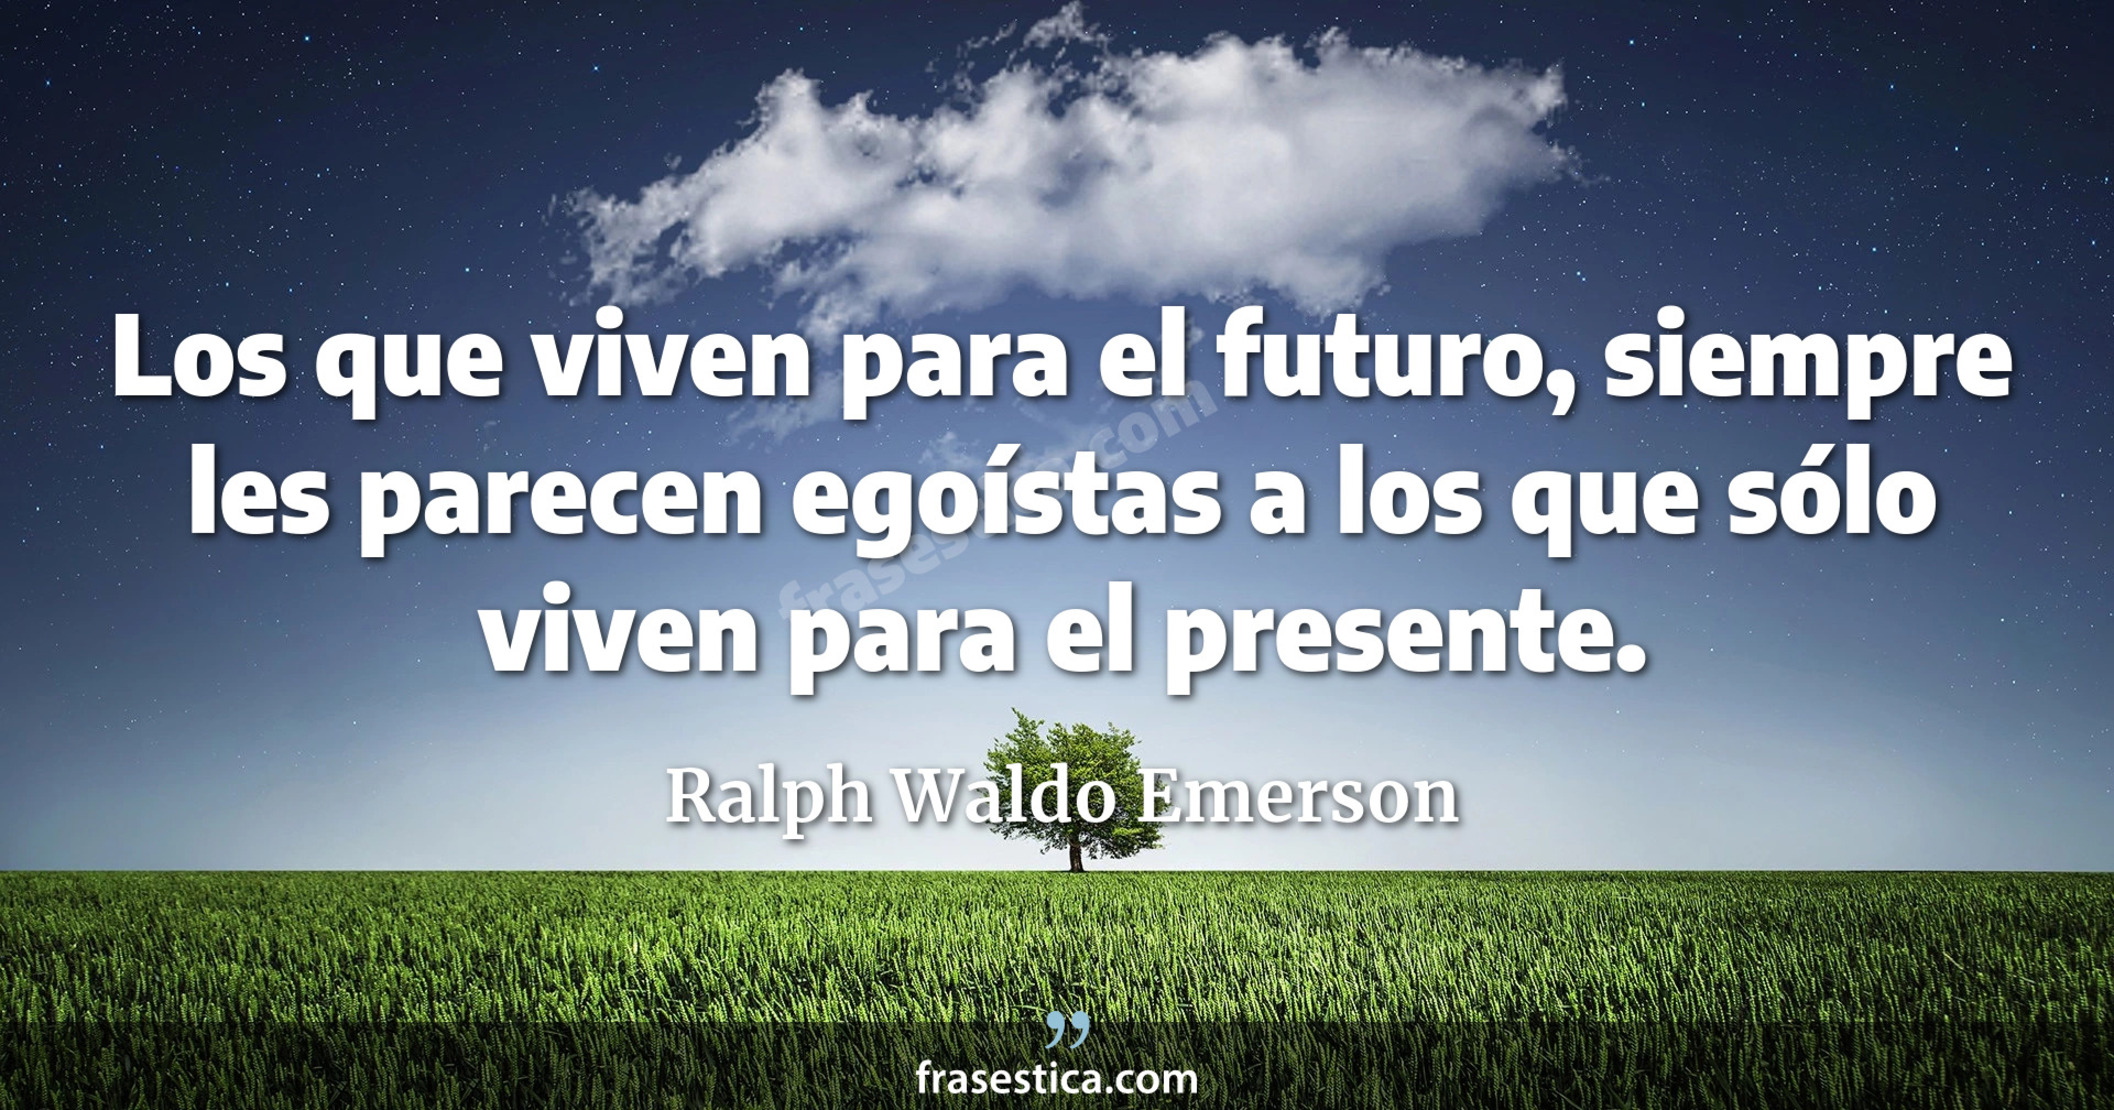 Los que viven para el futuro, siempre les parecen egoístas a los que sólo viven para el presente. - Ralph Waldo Emerson